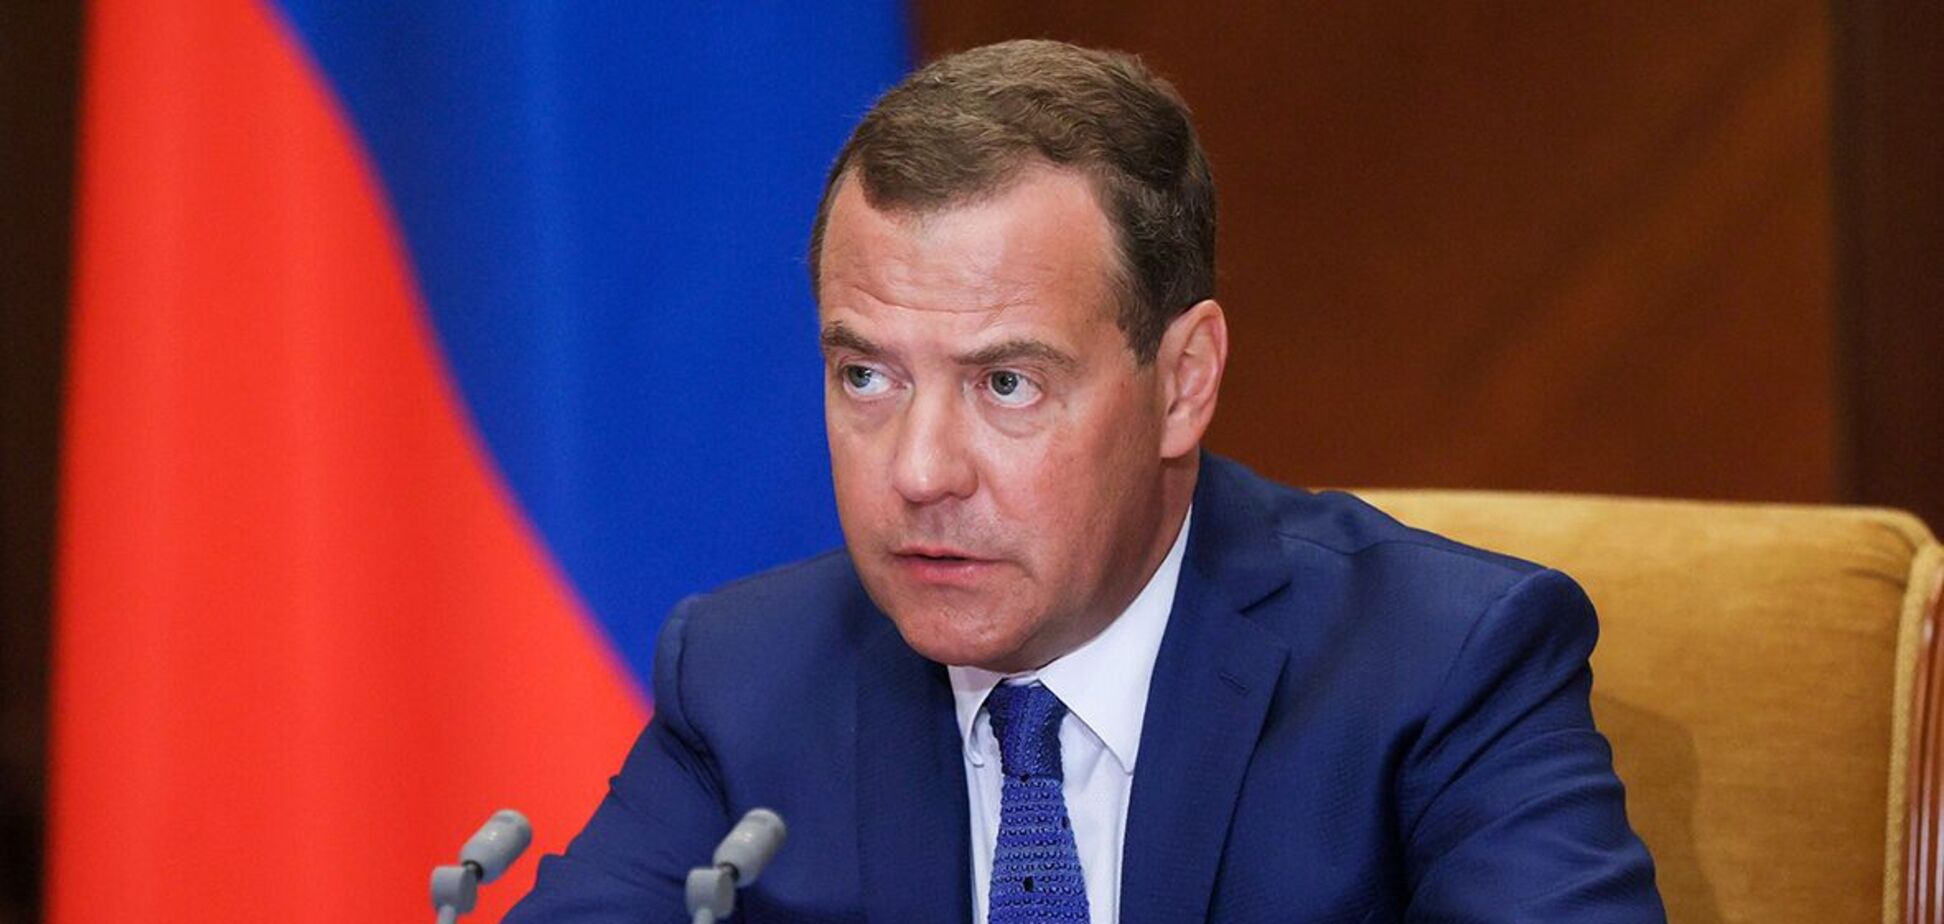 Медведев заявил, что в августе 2008 года Грузия 'объявила войну России'